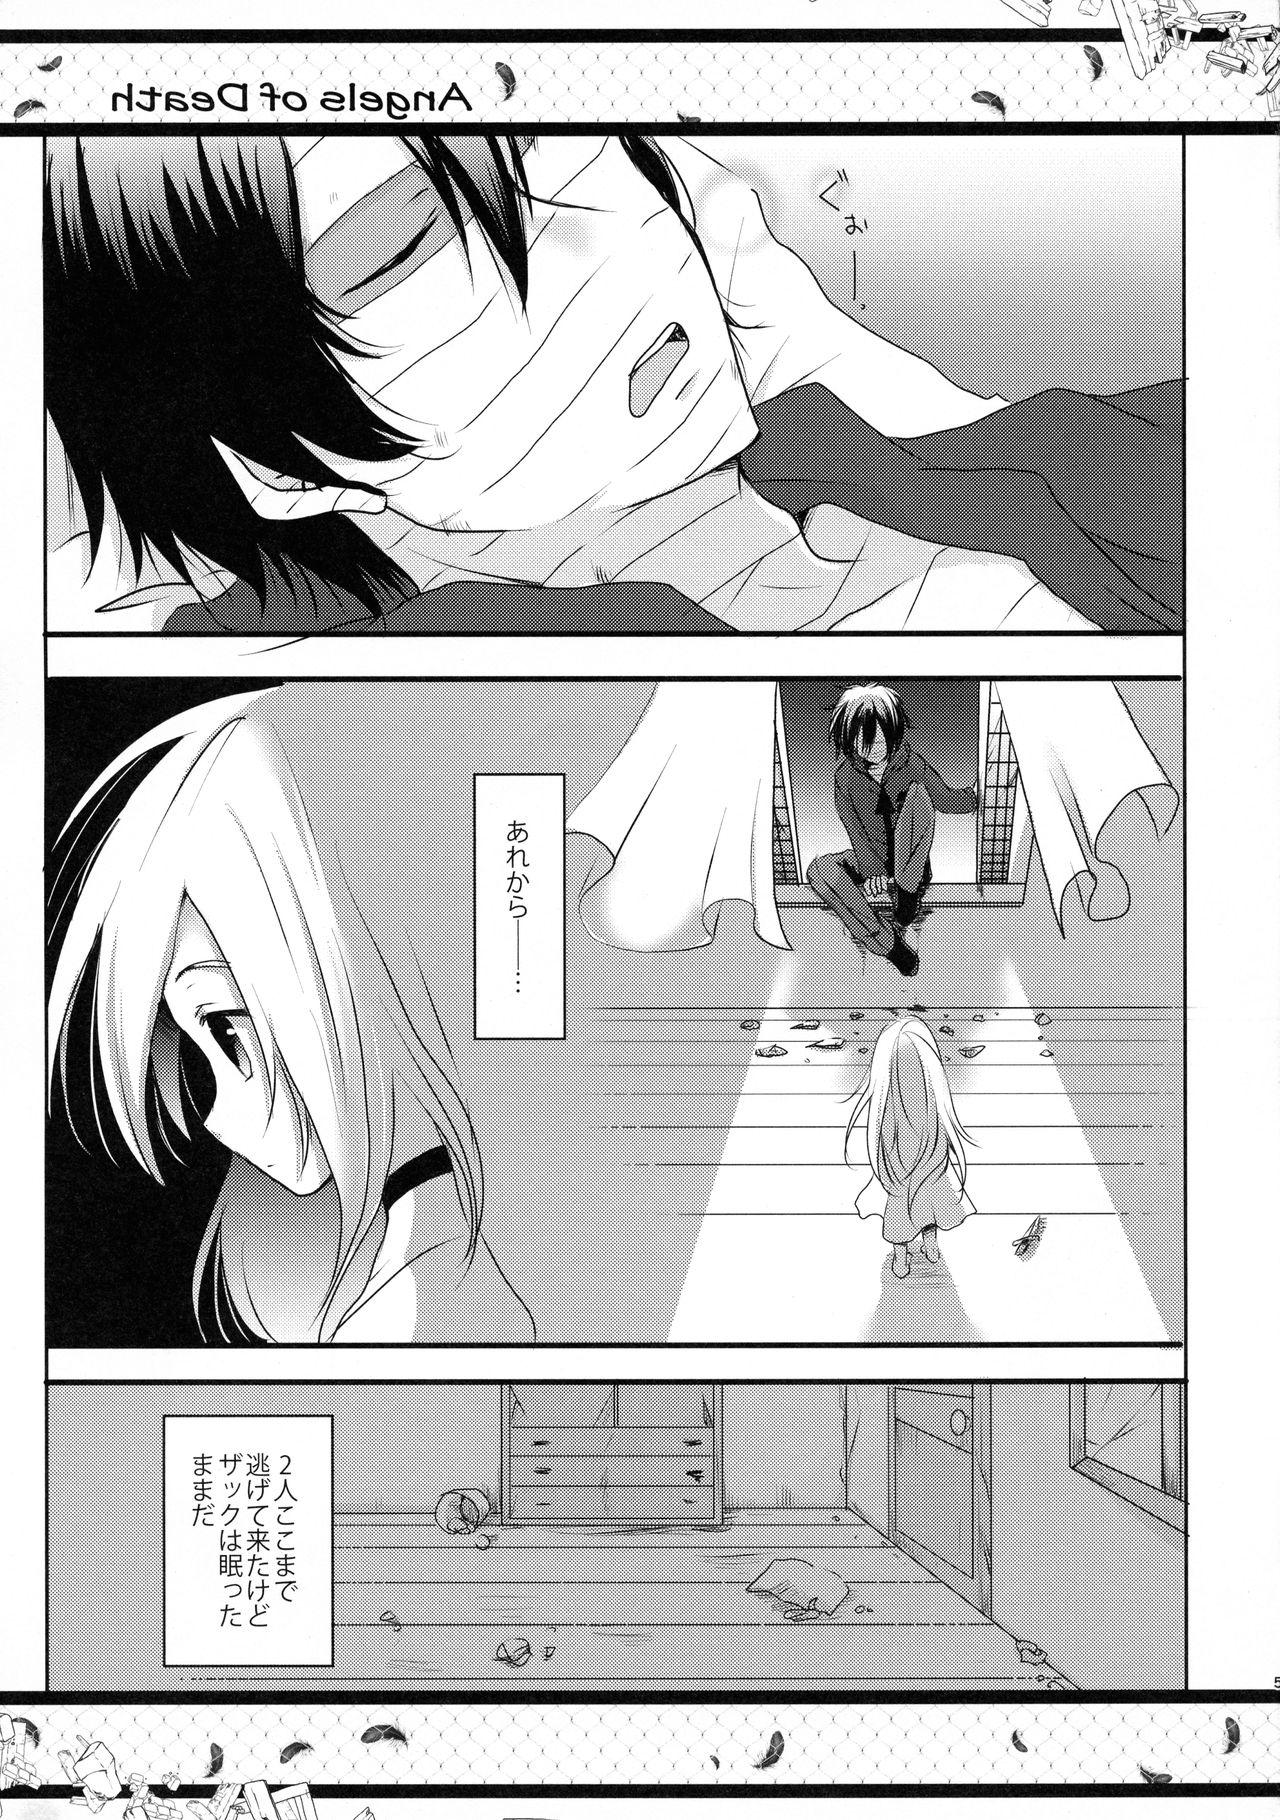 Anal Licking HAPPY END - Satsuriku no tenshi Pegging - Page 5